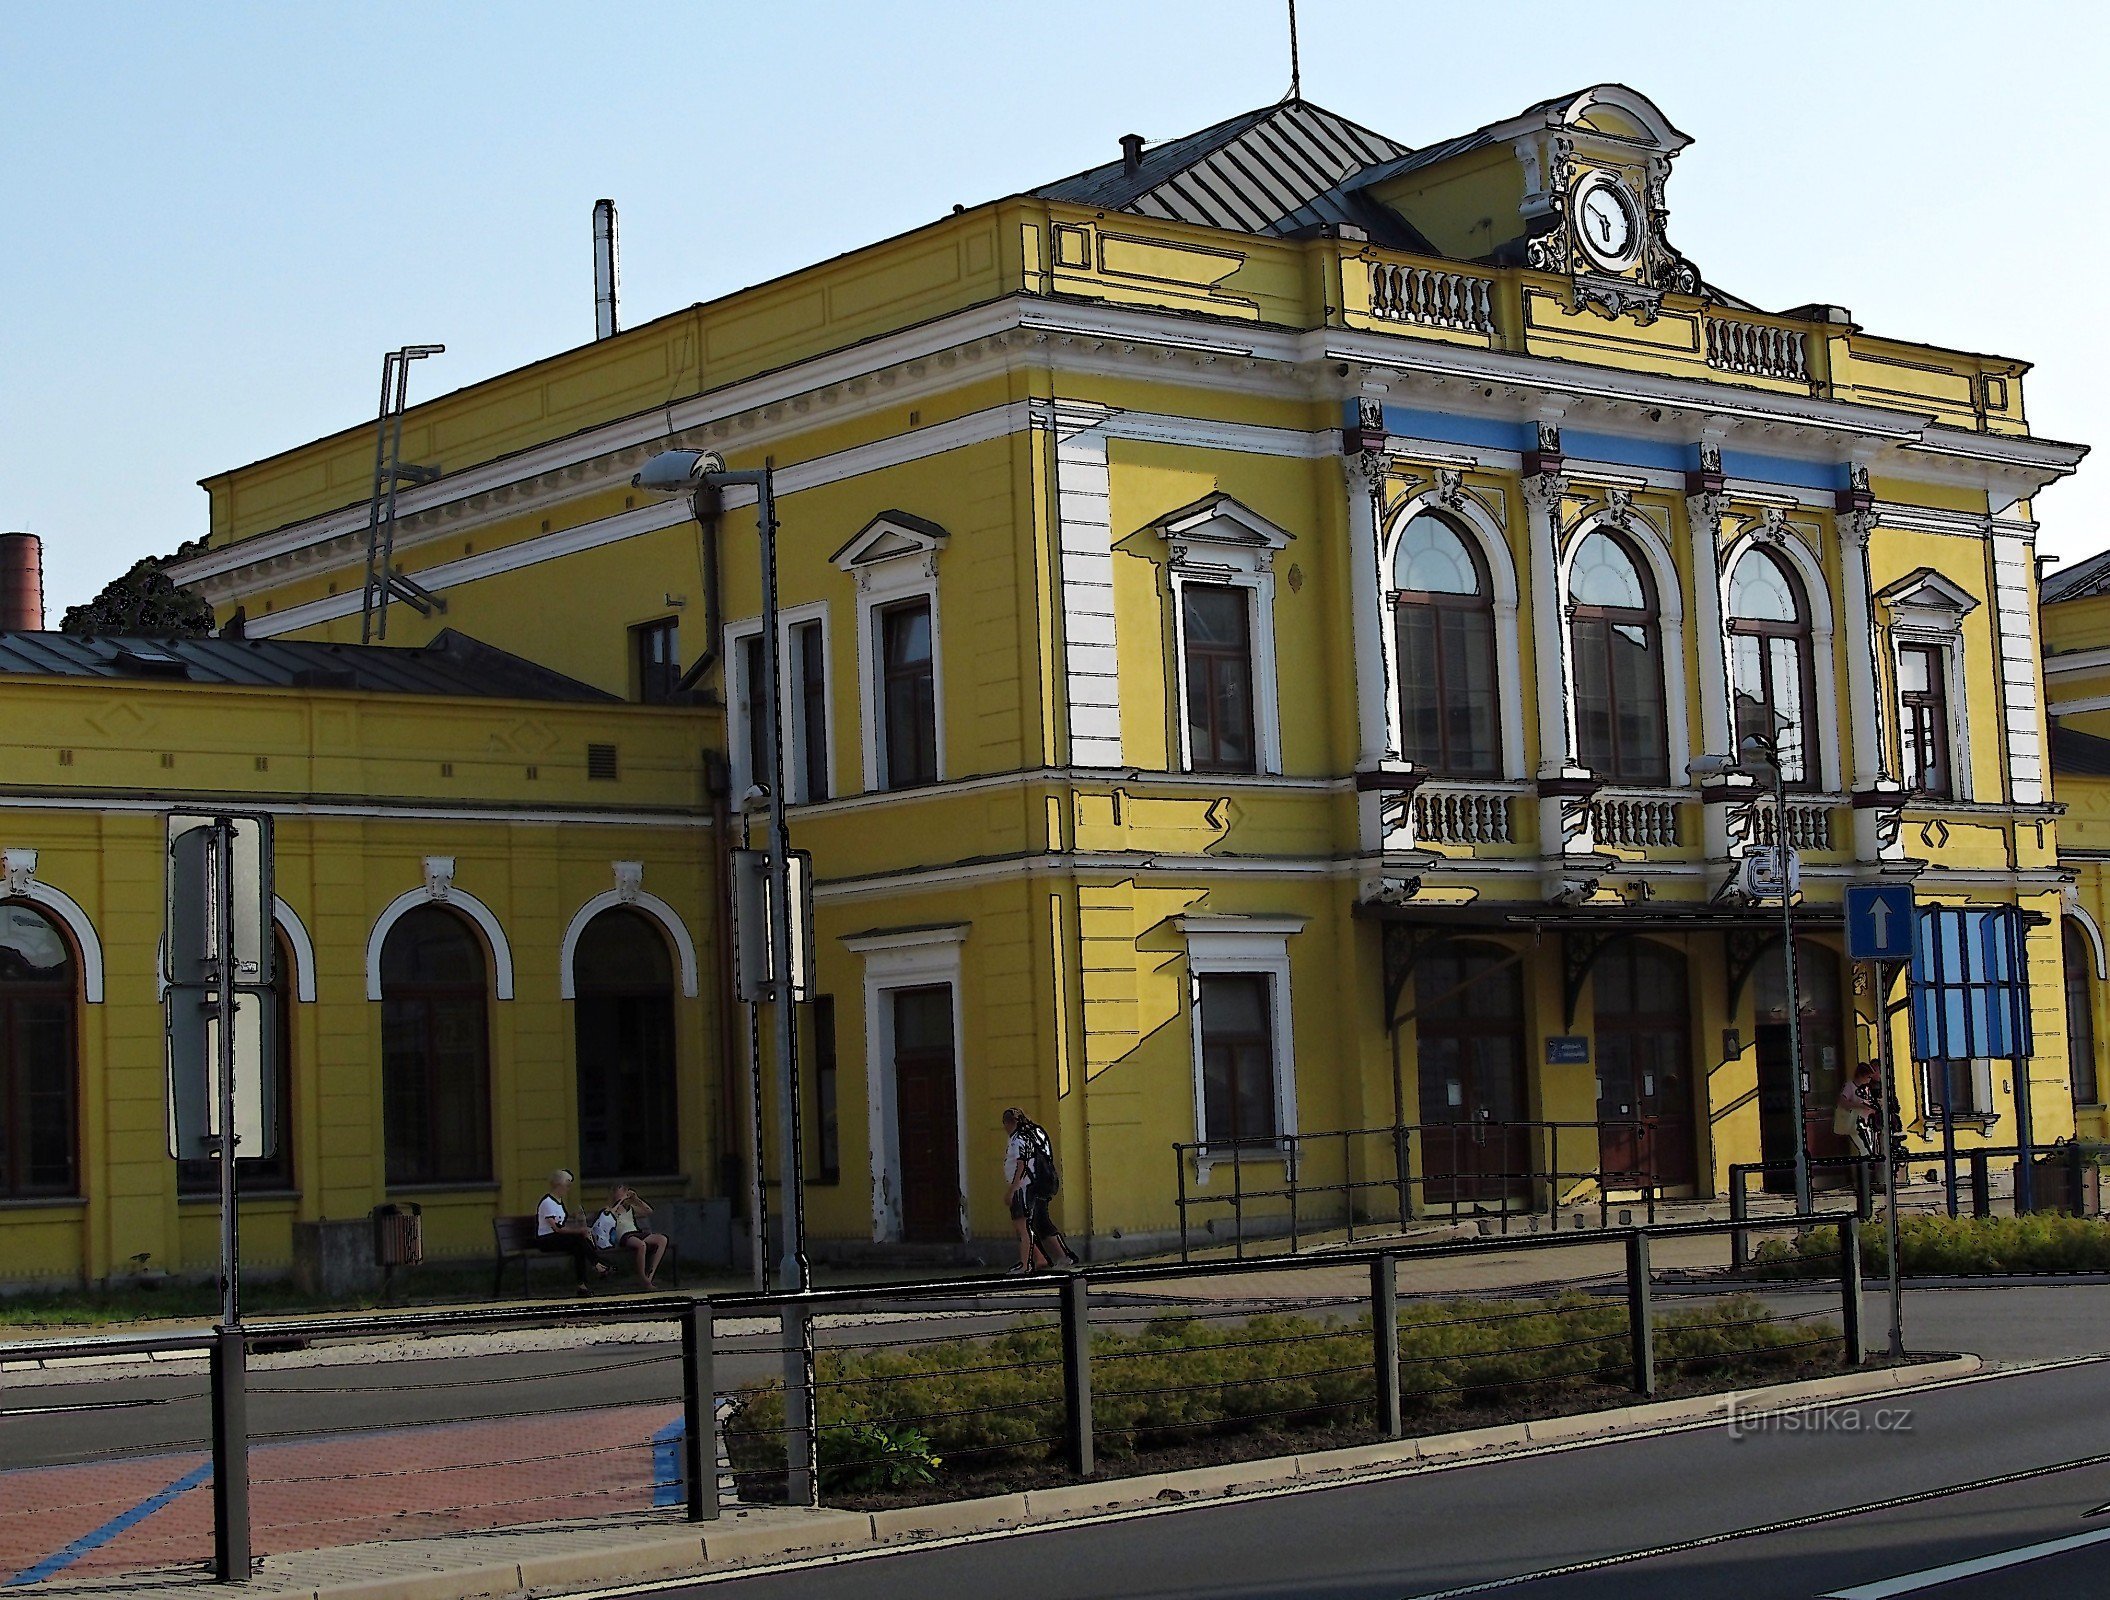 Šumperk - glavna zgrada željezničkog kolodvora